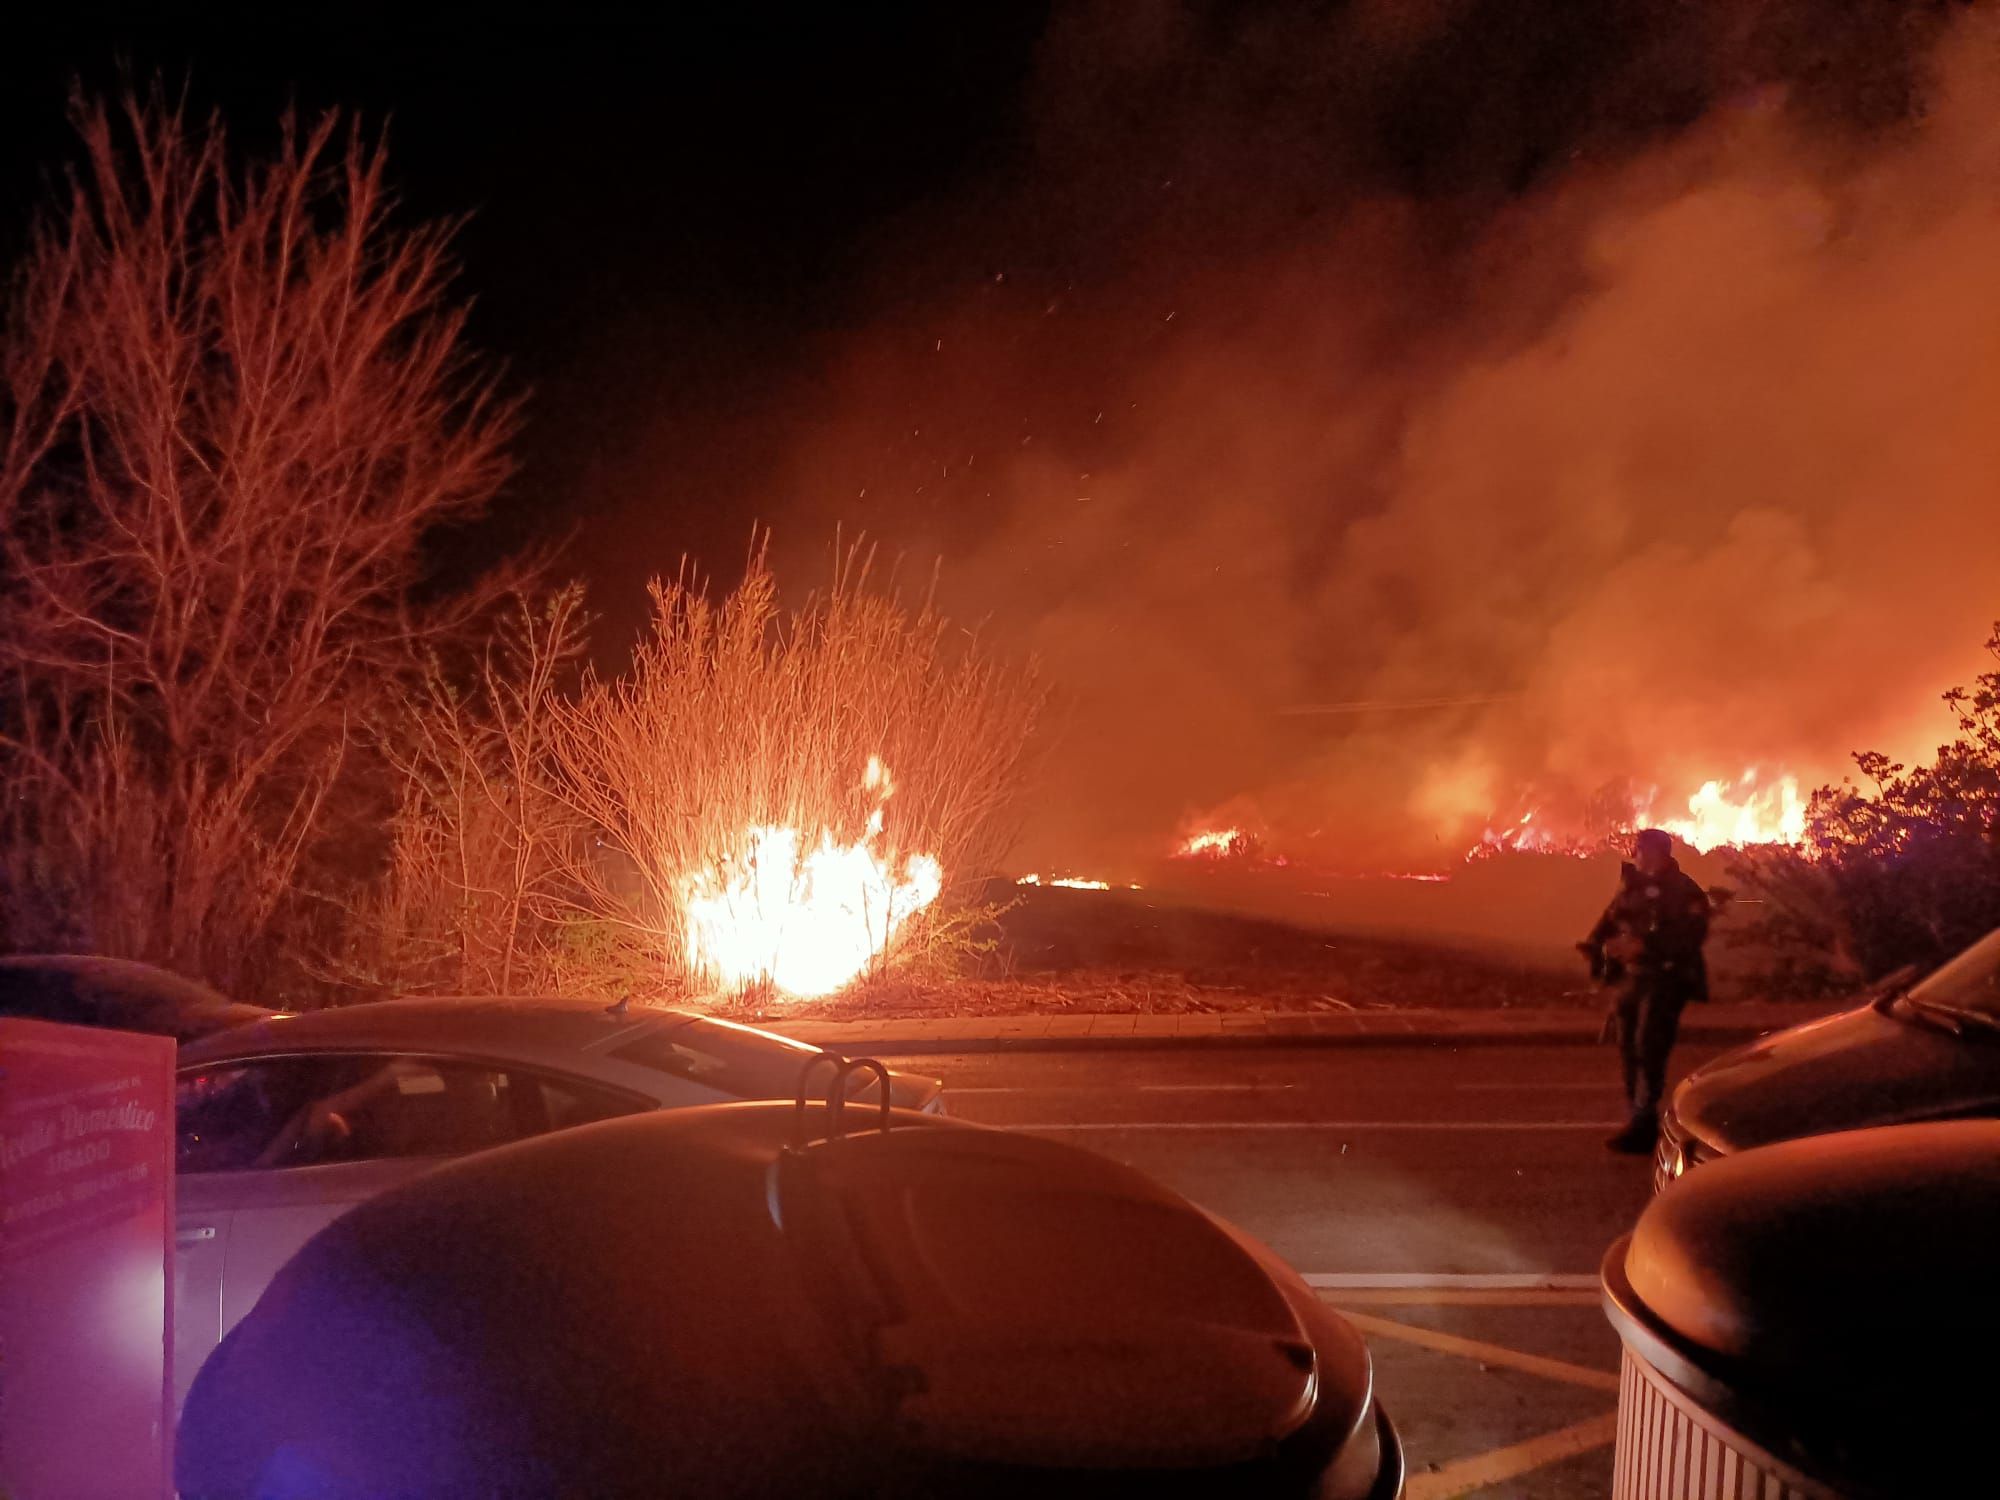 Imágenes del incendio de Teulada: un castillo de fuegos artificiales provoca un virulento fuego